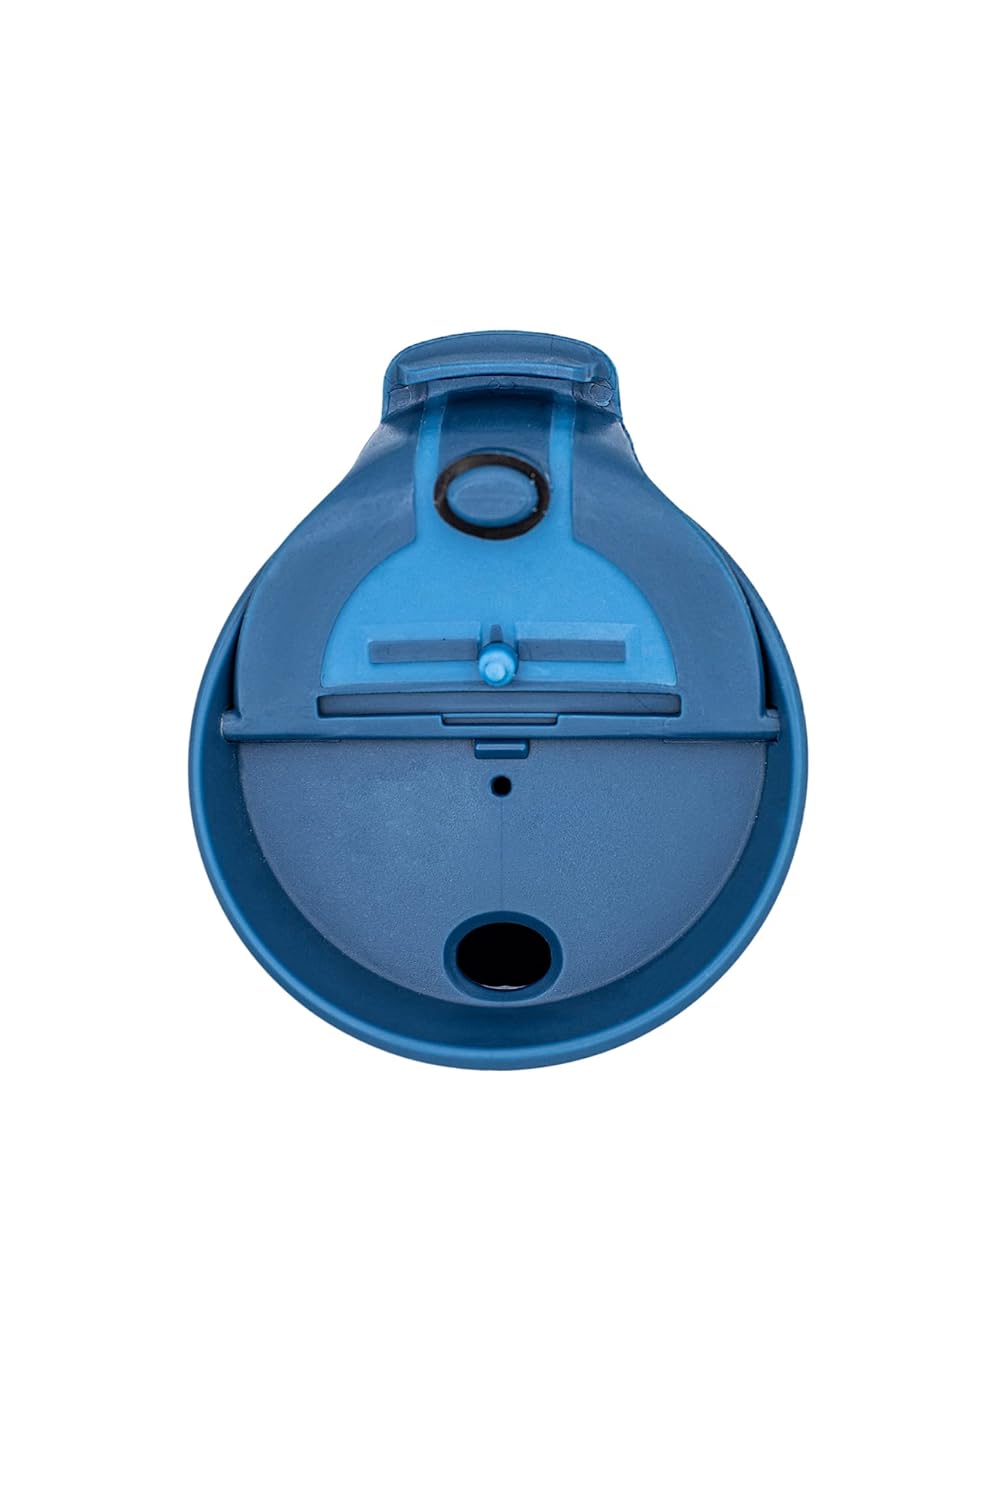 Costablue Vacuum Insulated Stainless Steel Thermal Travel Mug, 16 oz, Easy to clean, Flip leak proof Ocean Blue lid